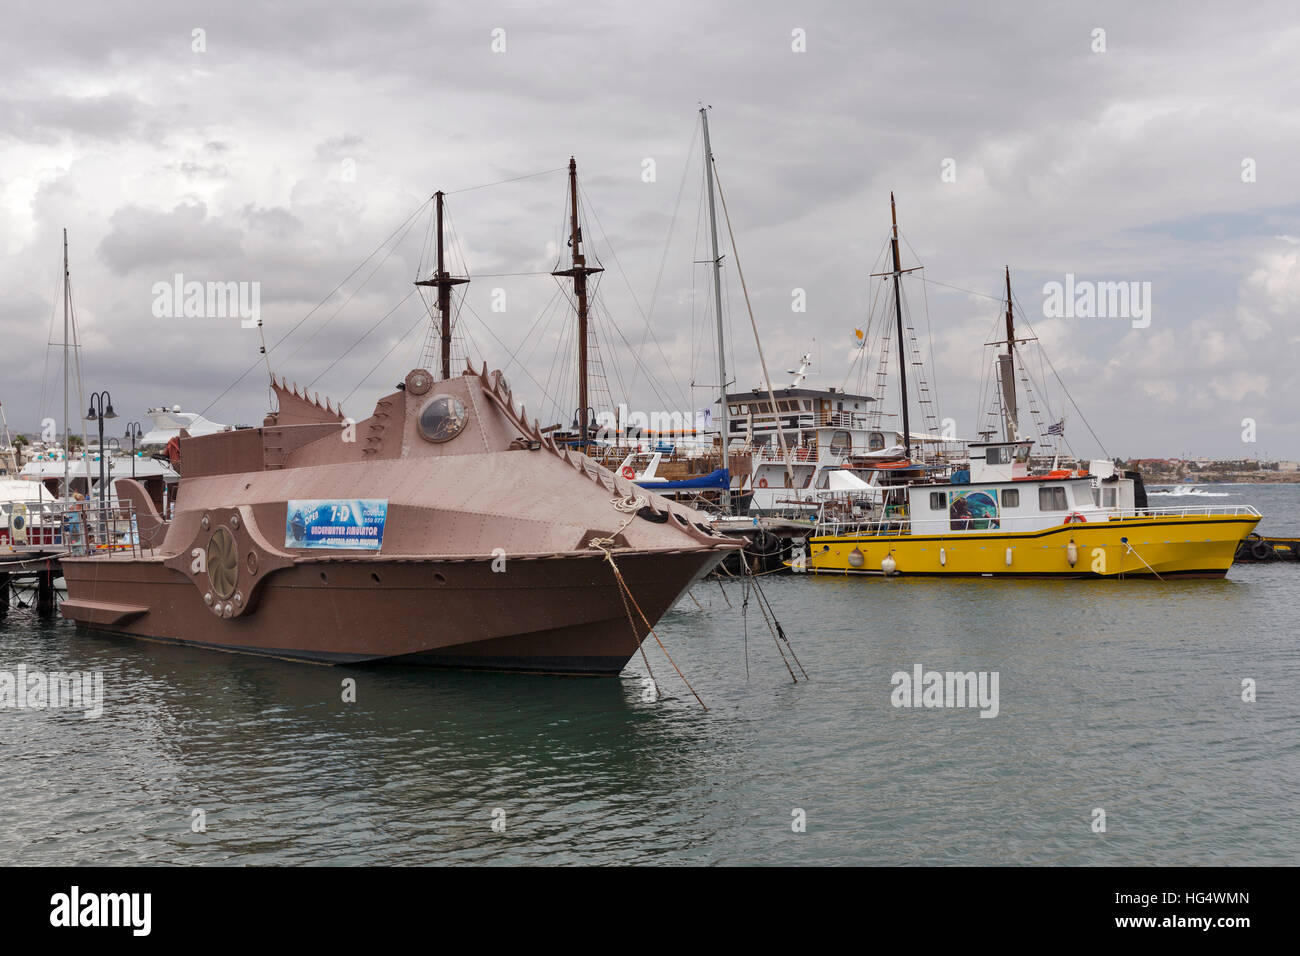 Sous-marin Nautilus voyage touristique simulateur bateau amarré au port de Paphos. Paphos est une station touristique d'été populaire. Banque D'Images